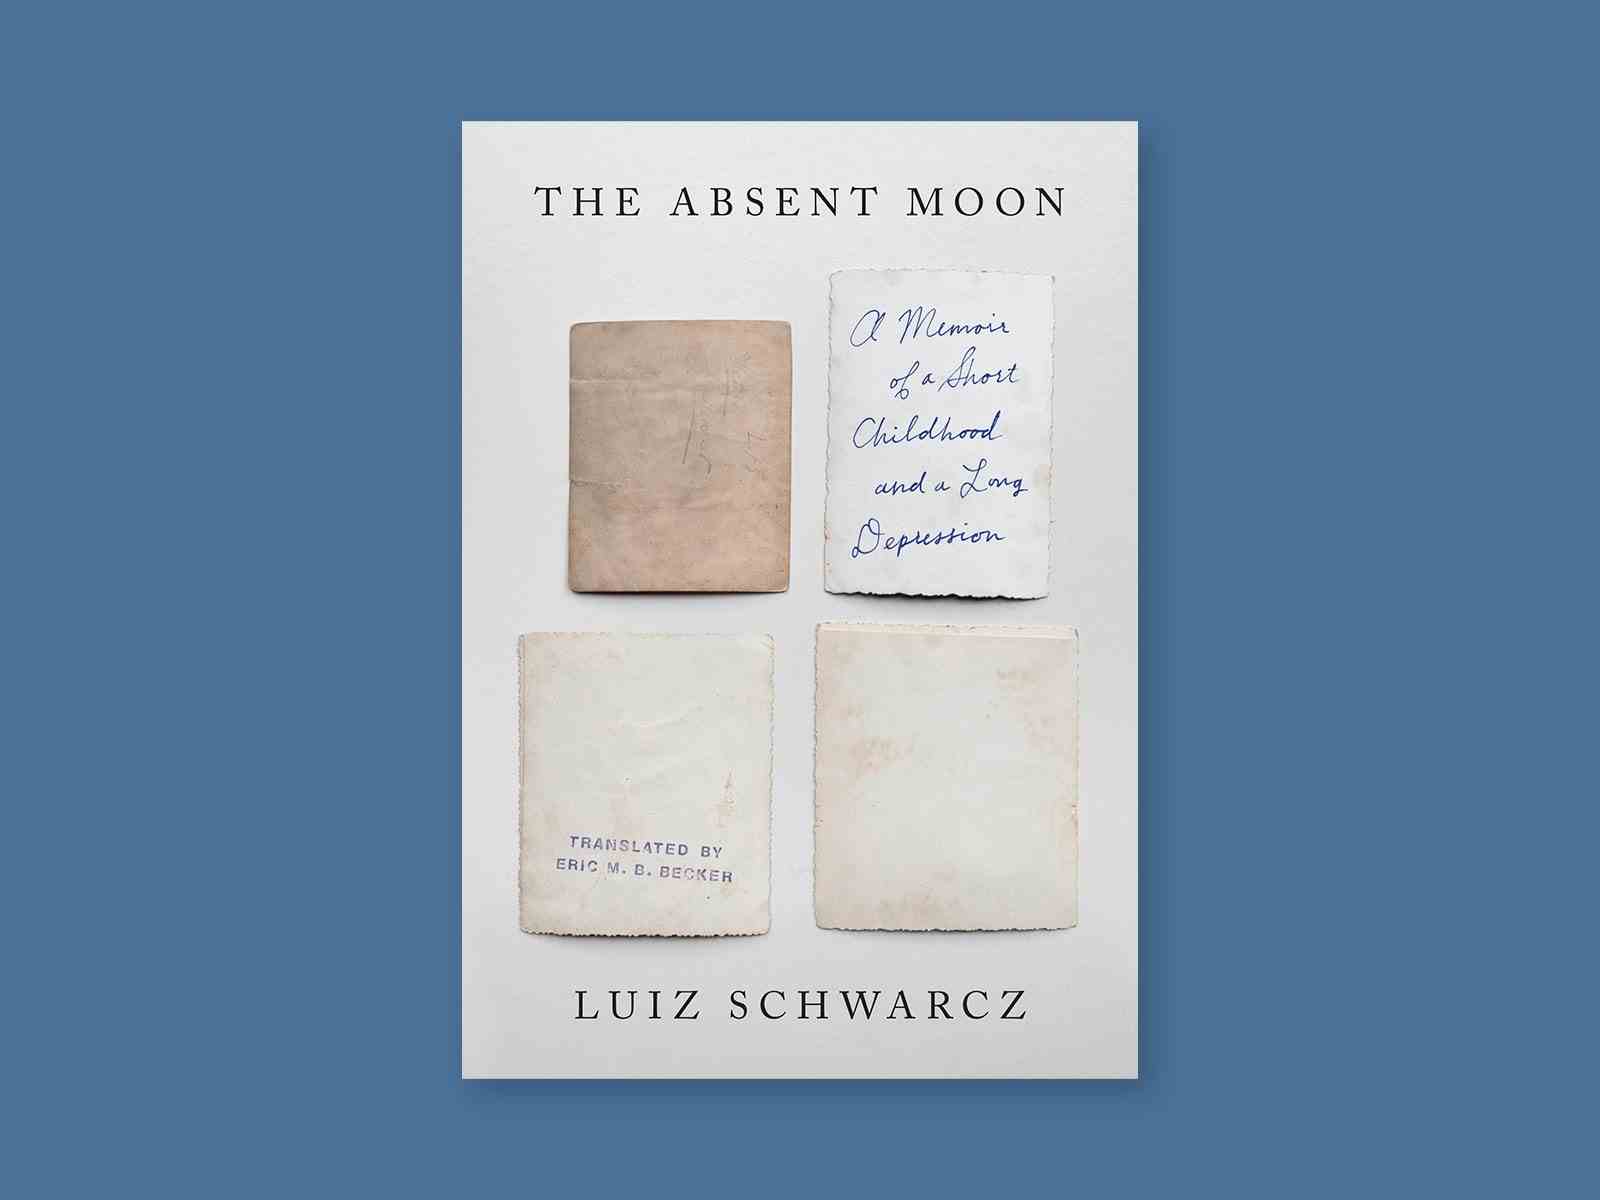 Der abwesende Mond von Luiz Schwarcz.